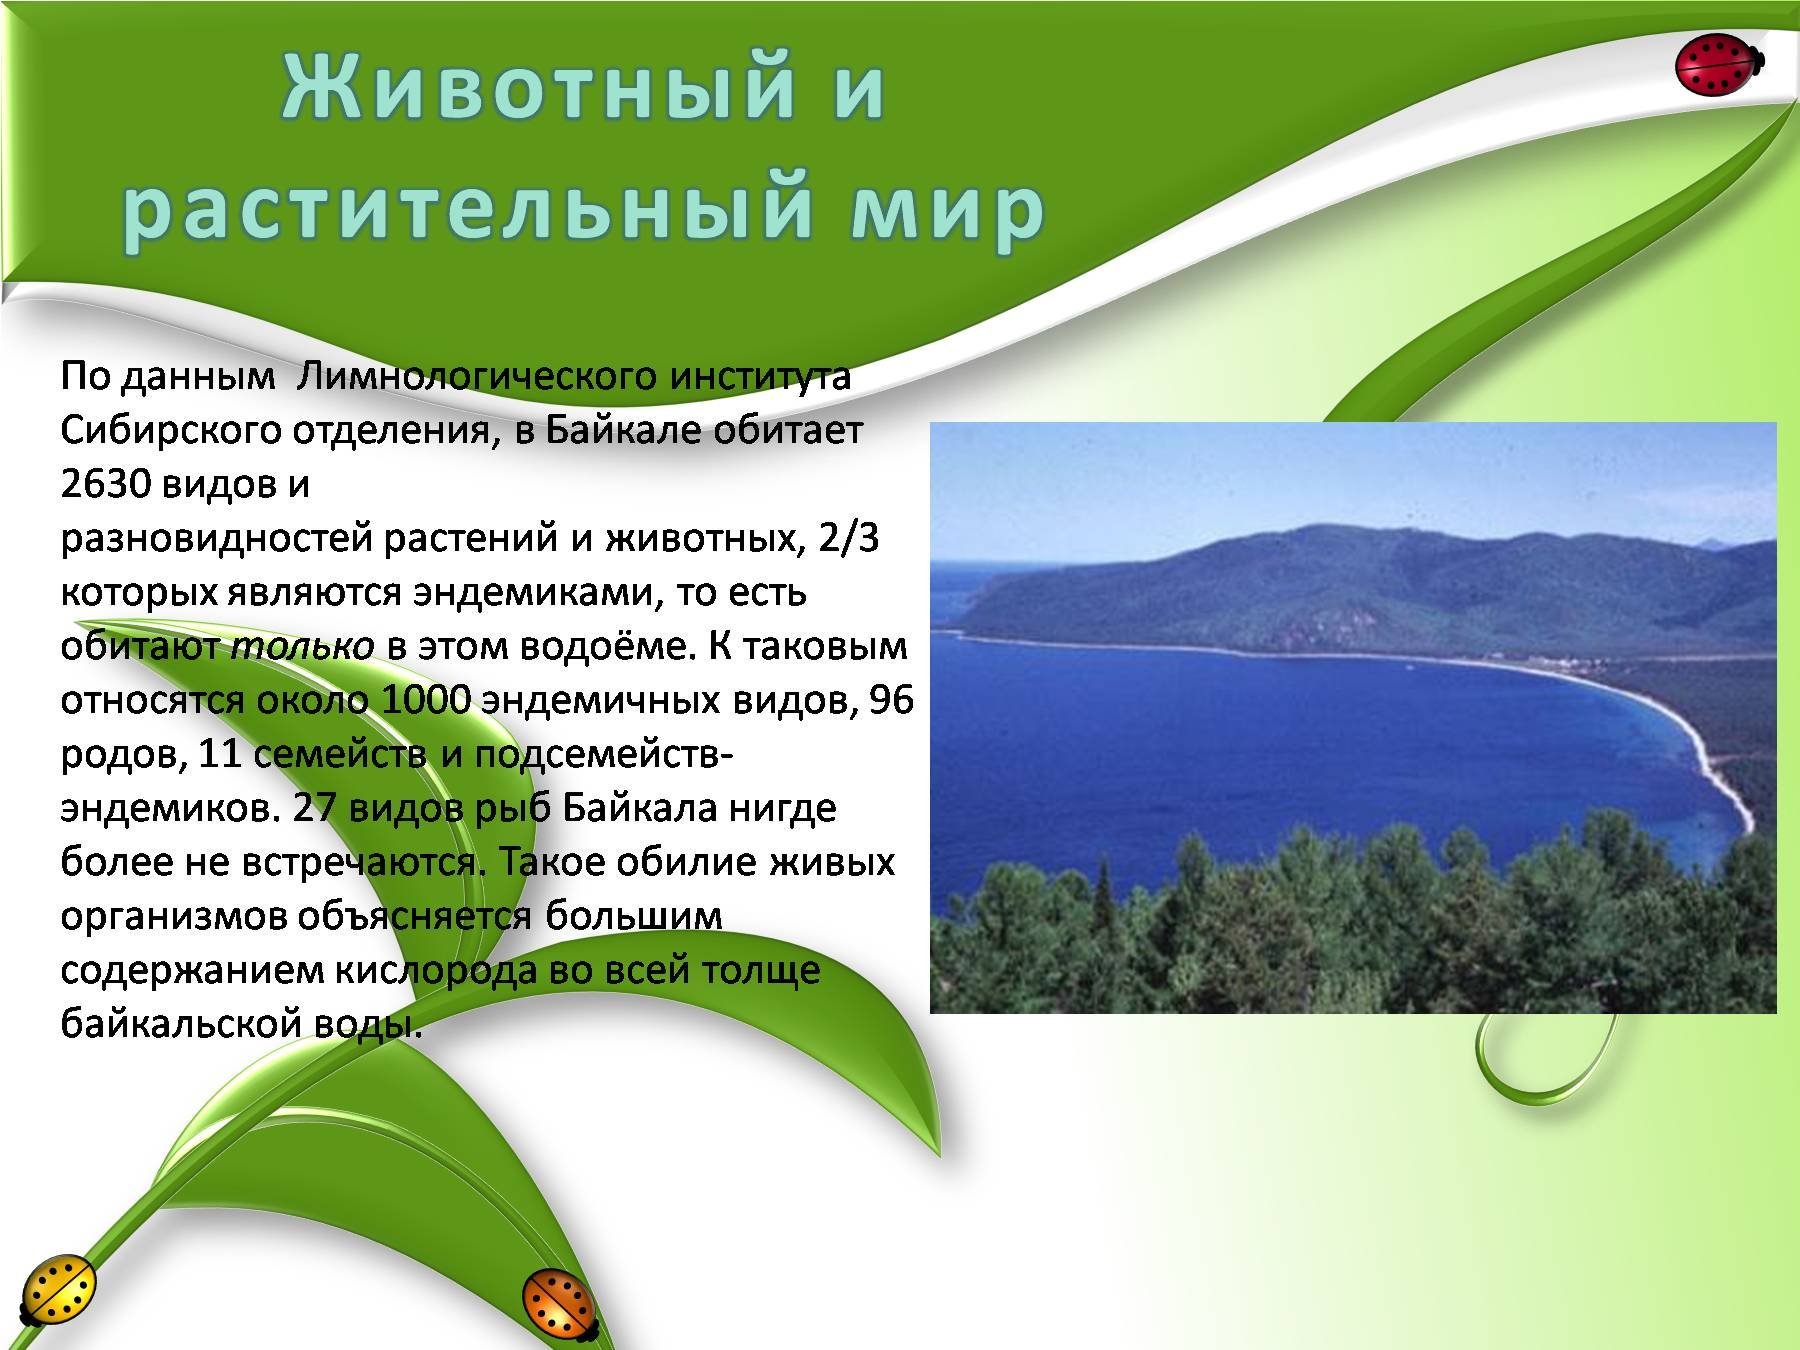 В Байкале обитает 2630 видов и разновидностей растений и животных